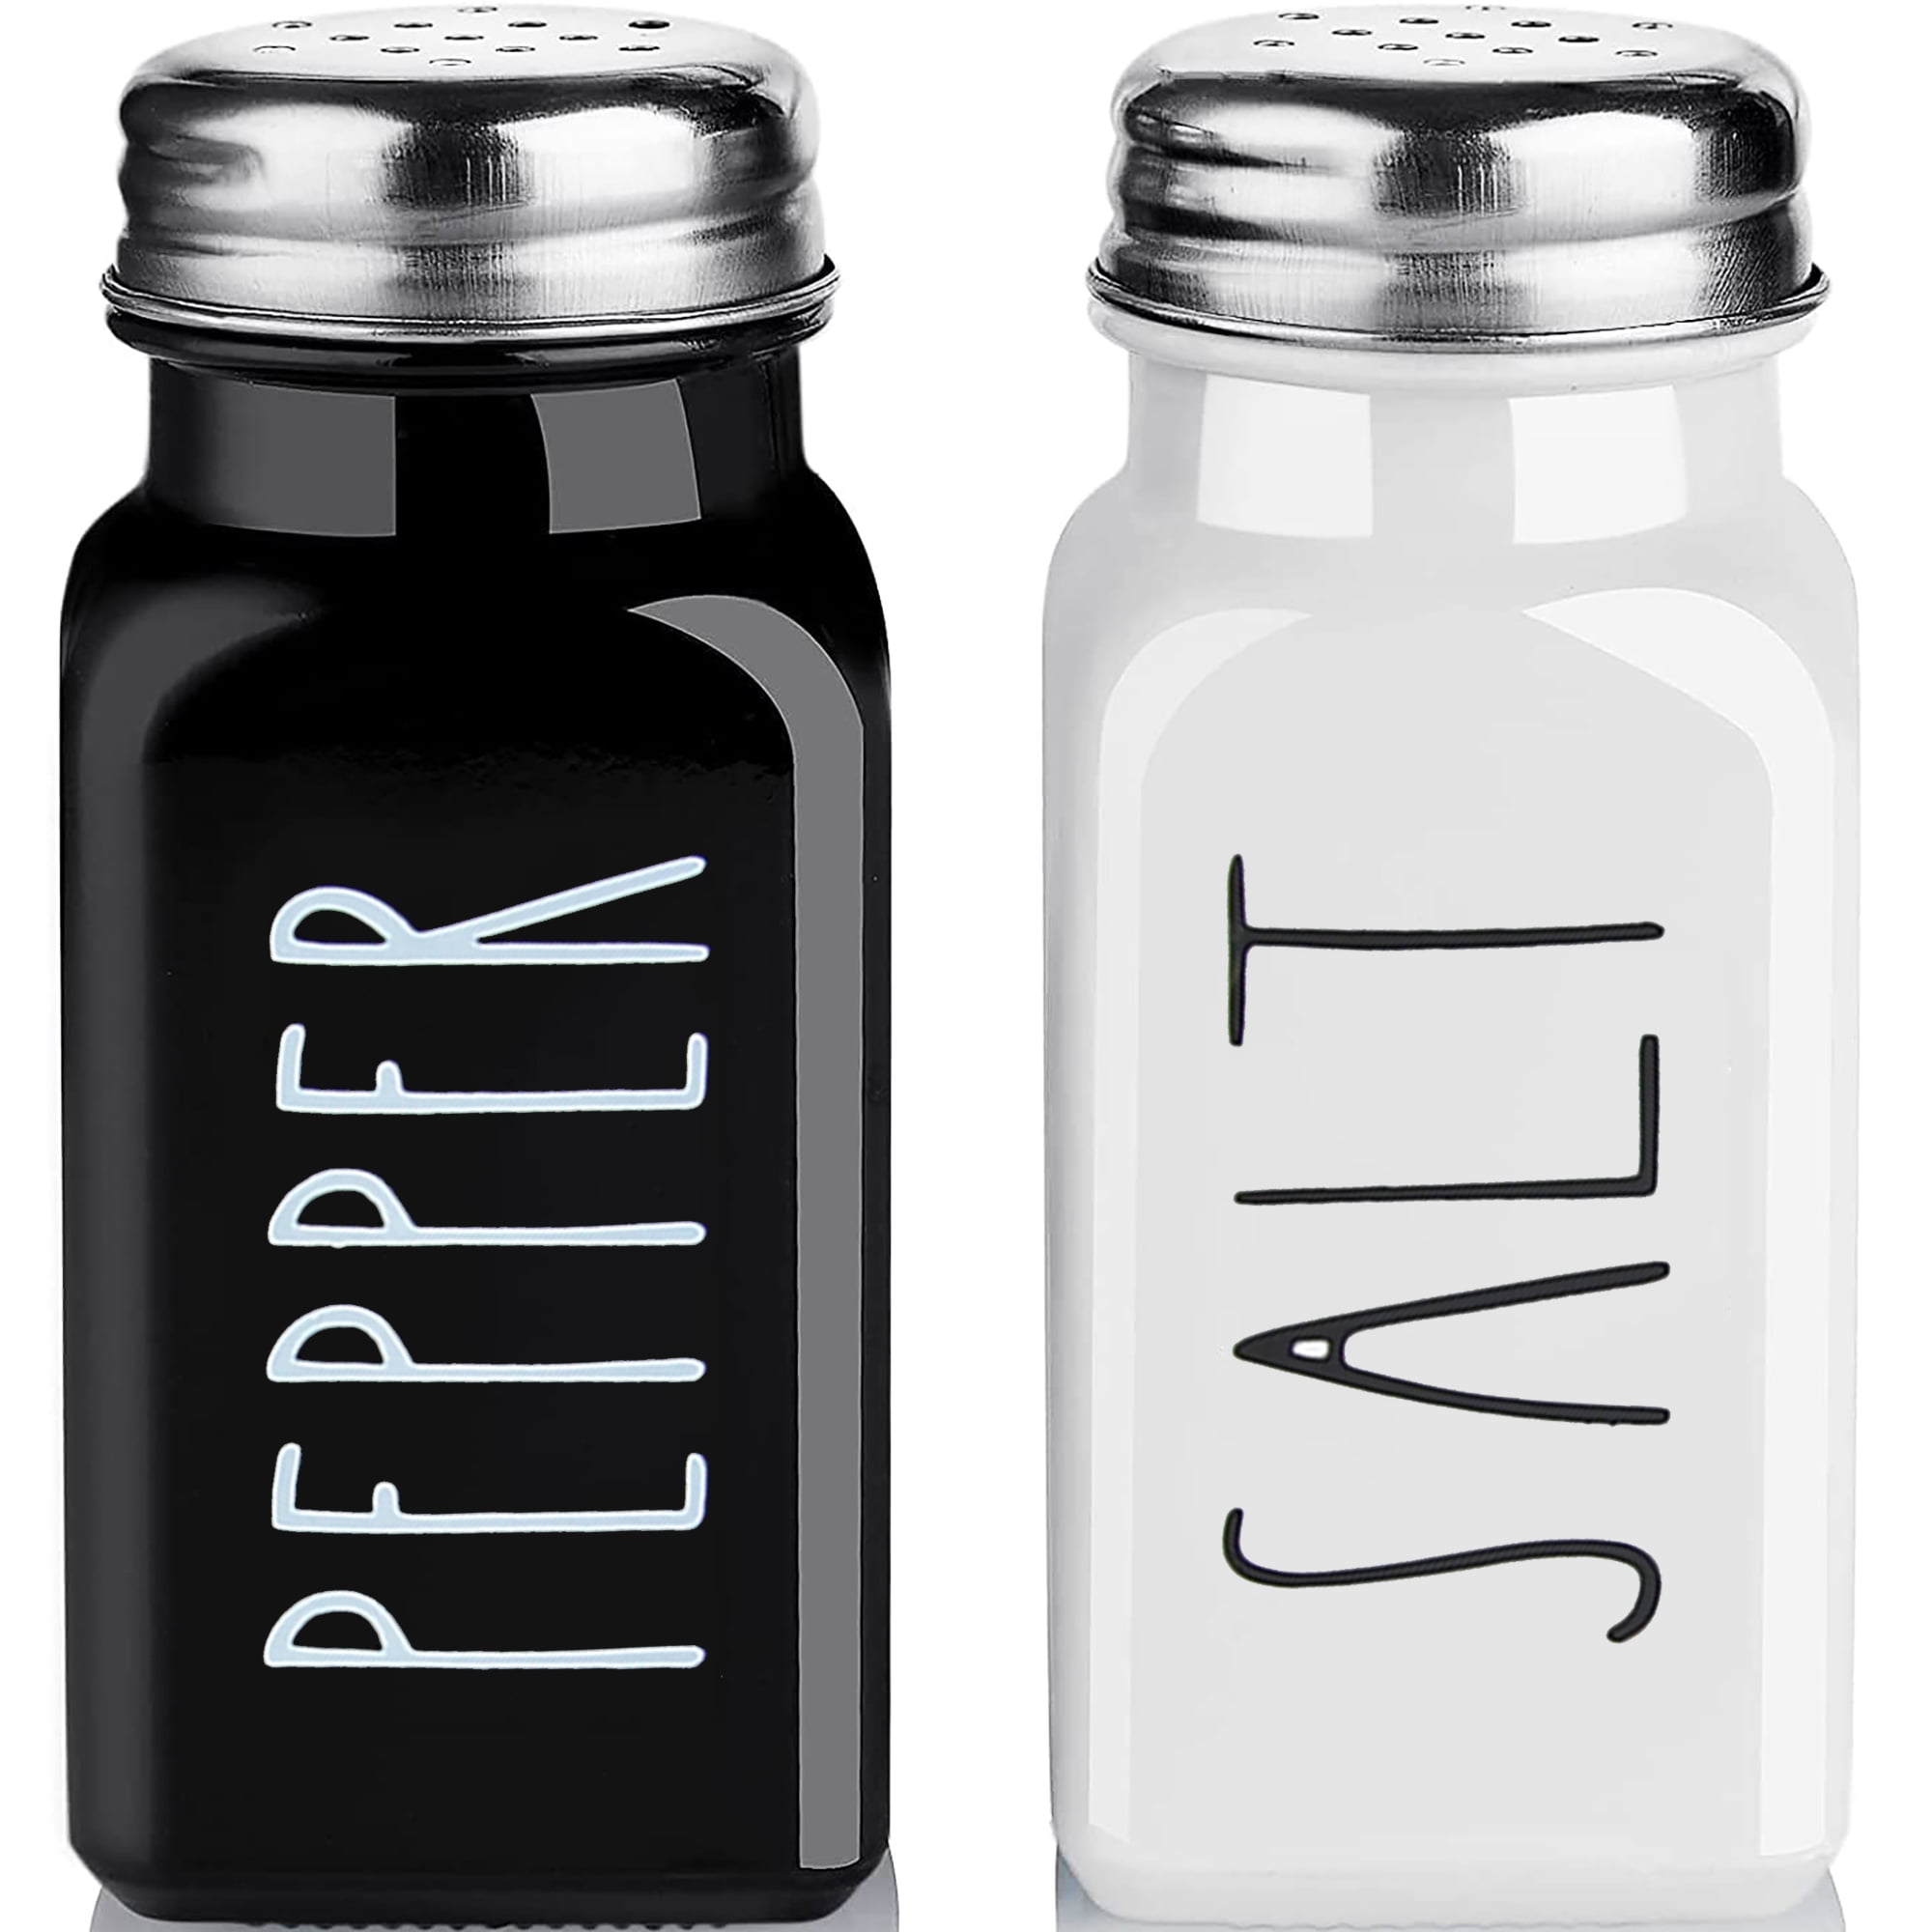 White Enamel Salt & Pepper Shaker Holder with Black Trim & Two Glass Shakers 